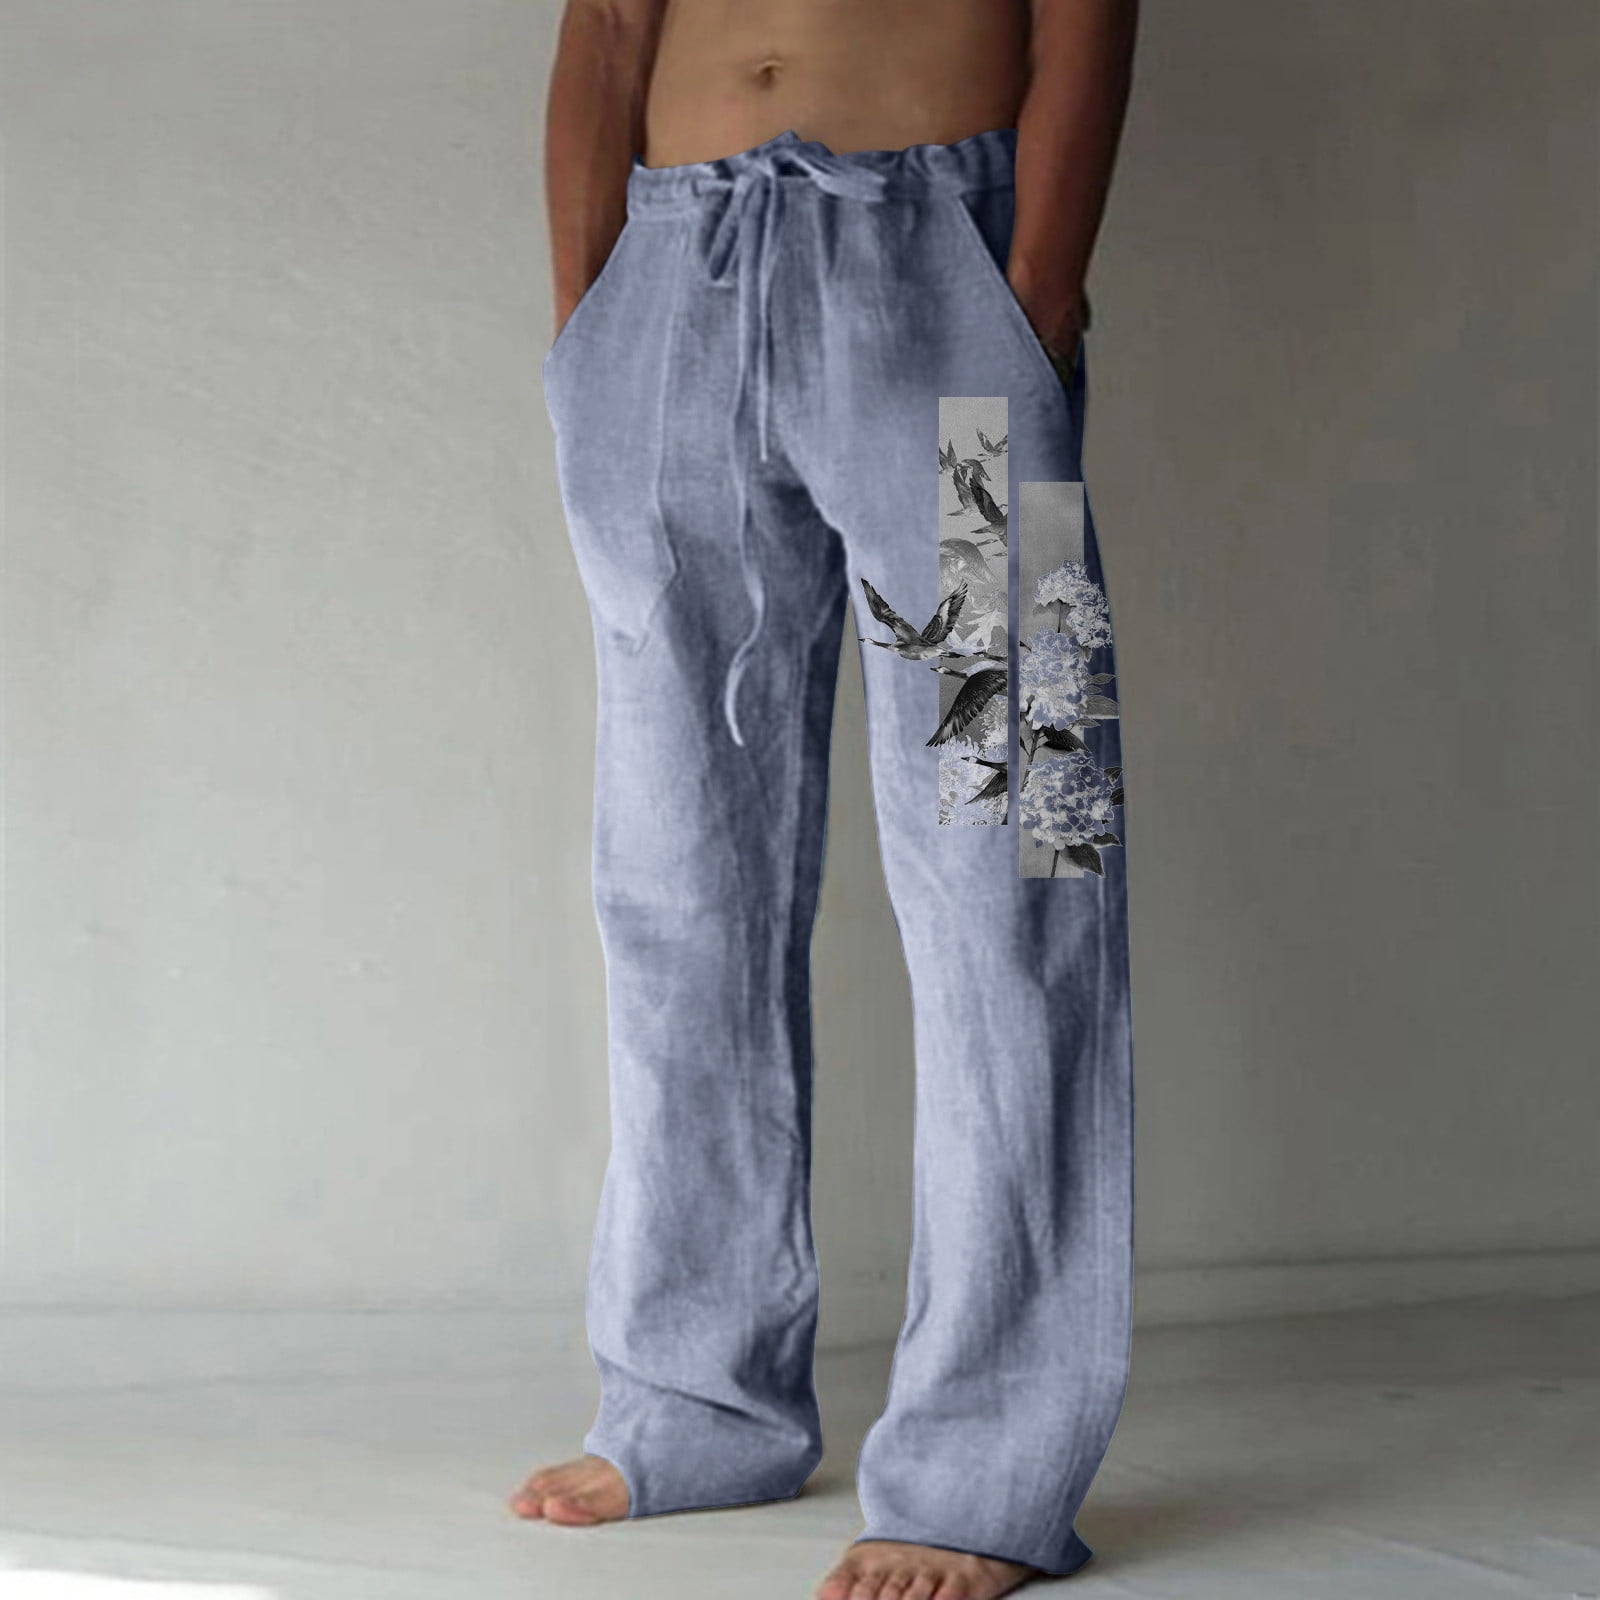 WUXI Yoga Pants Men,Bathing Suit Cover Up Pants,Male Jeans,Mens